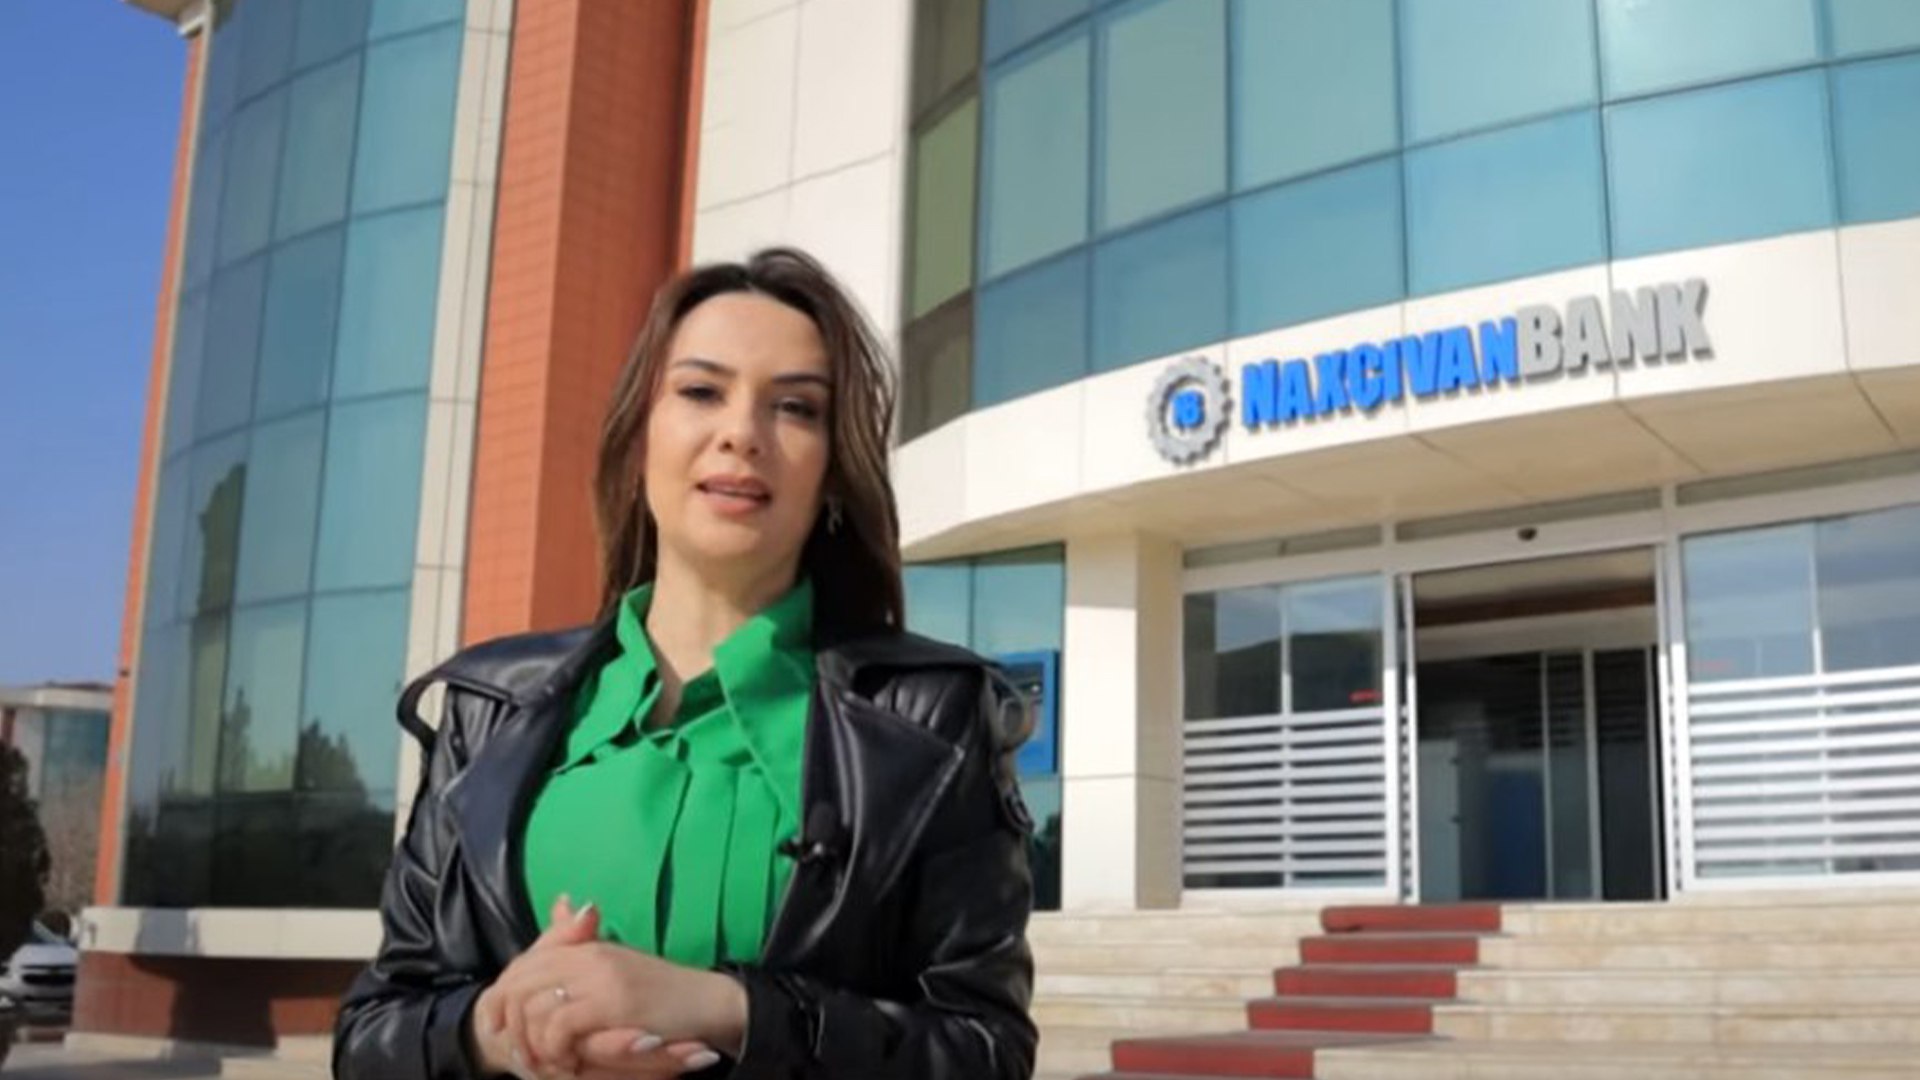 “Naxçıvanbank” 12 faizdən başlayan güzəştli kredit kampaniyasına start verdi - VİDEO